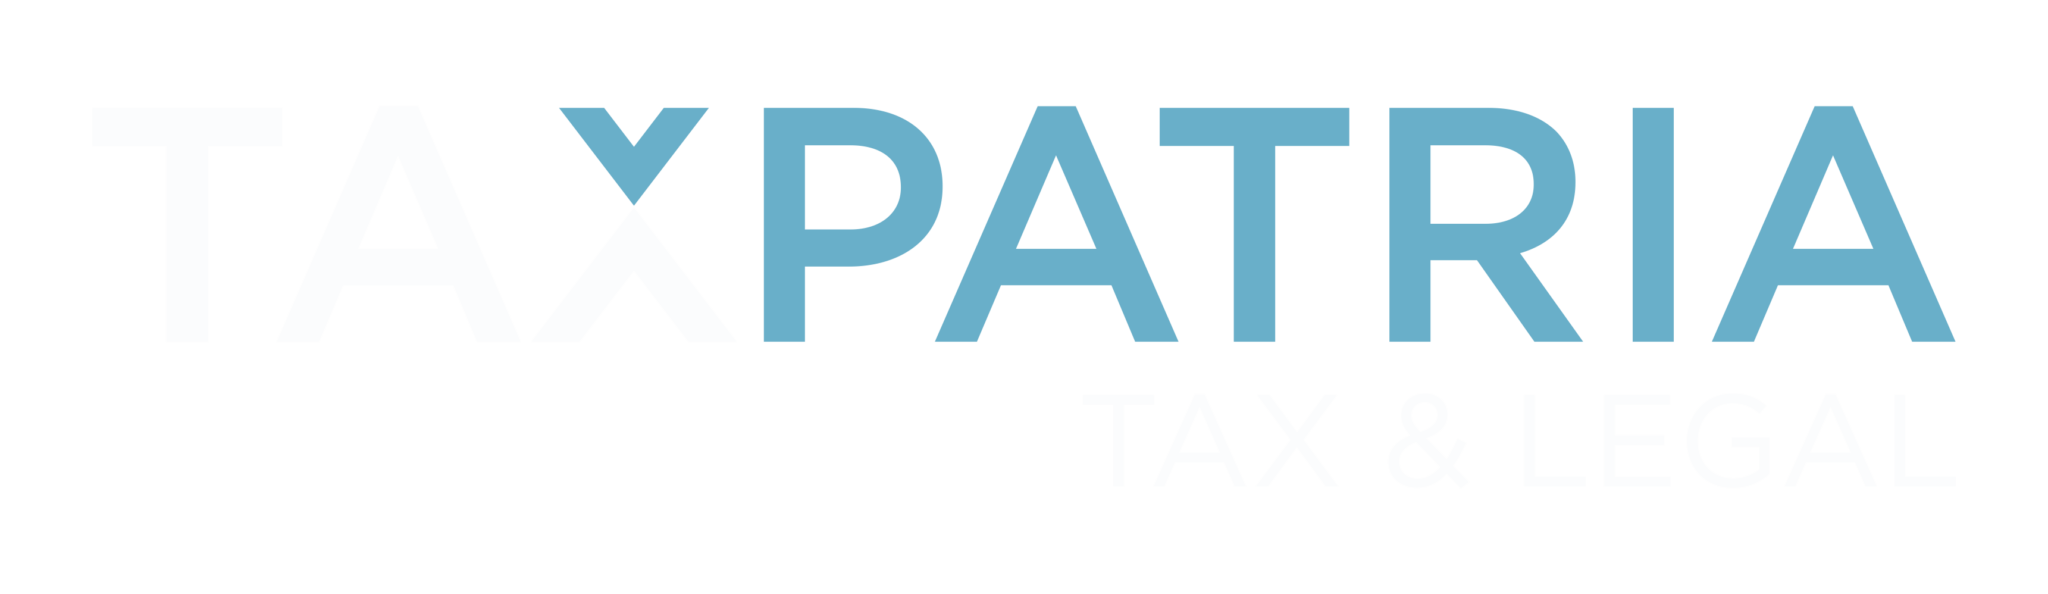 Taxpatria-tax-legal--white-logo-fin-2048x594